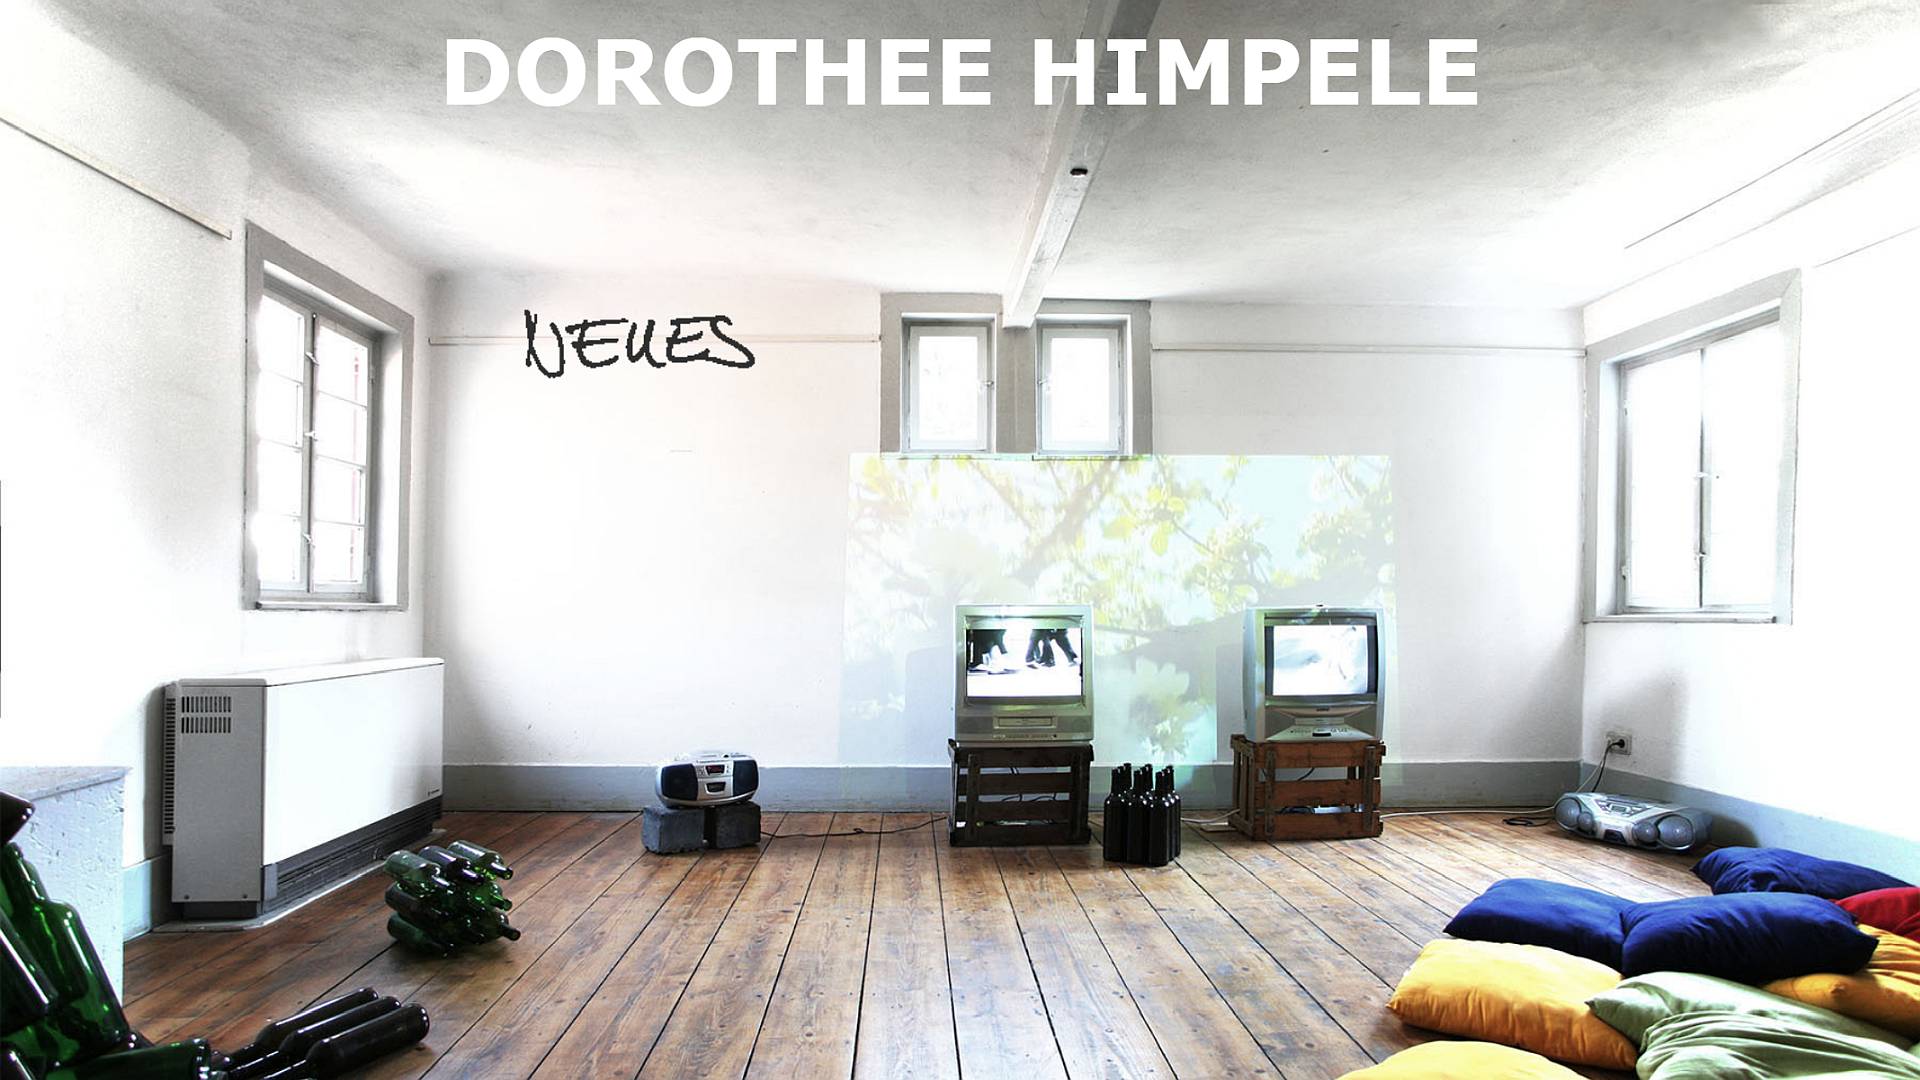 Dorothee Himpele